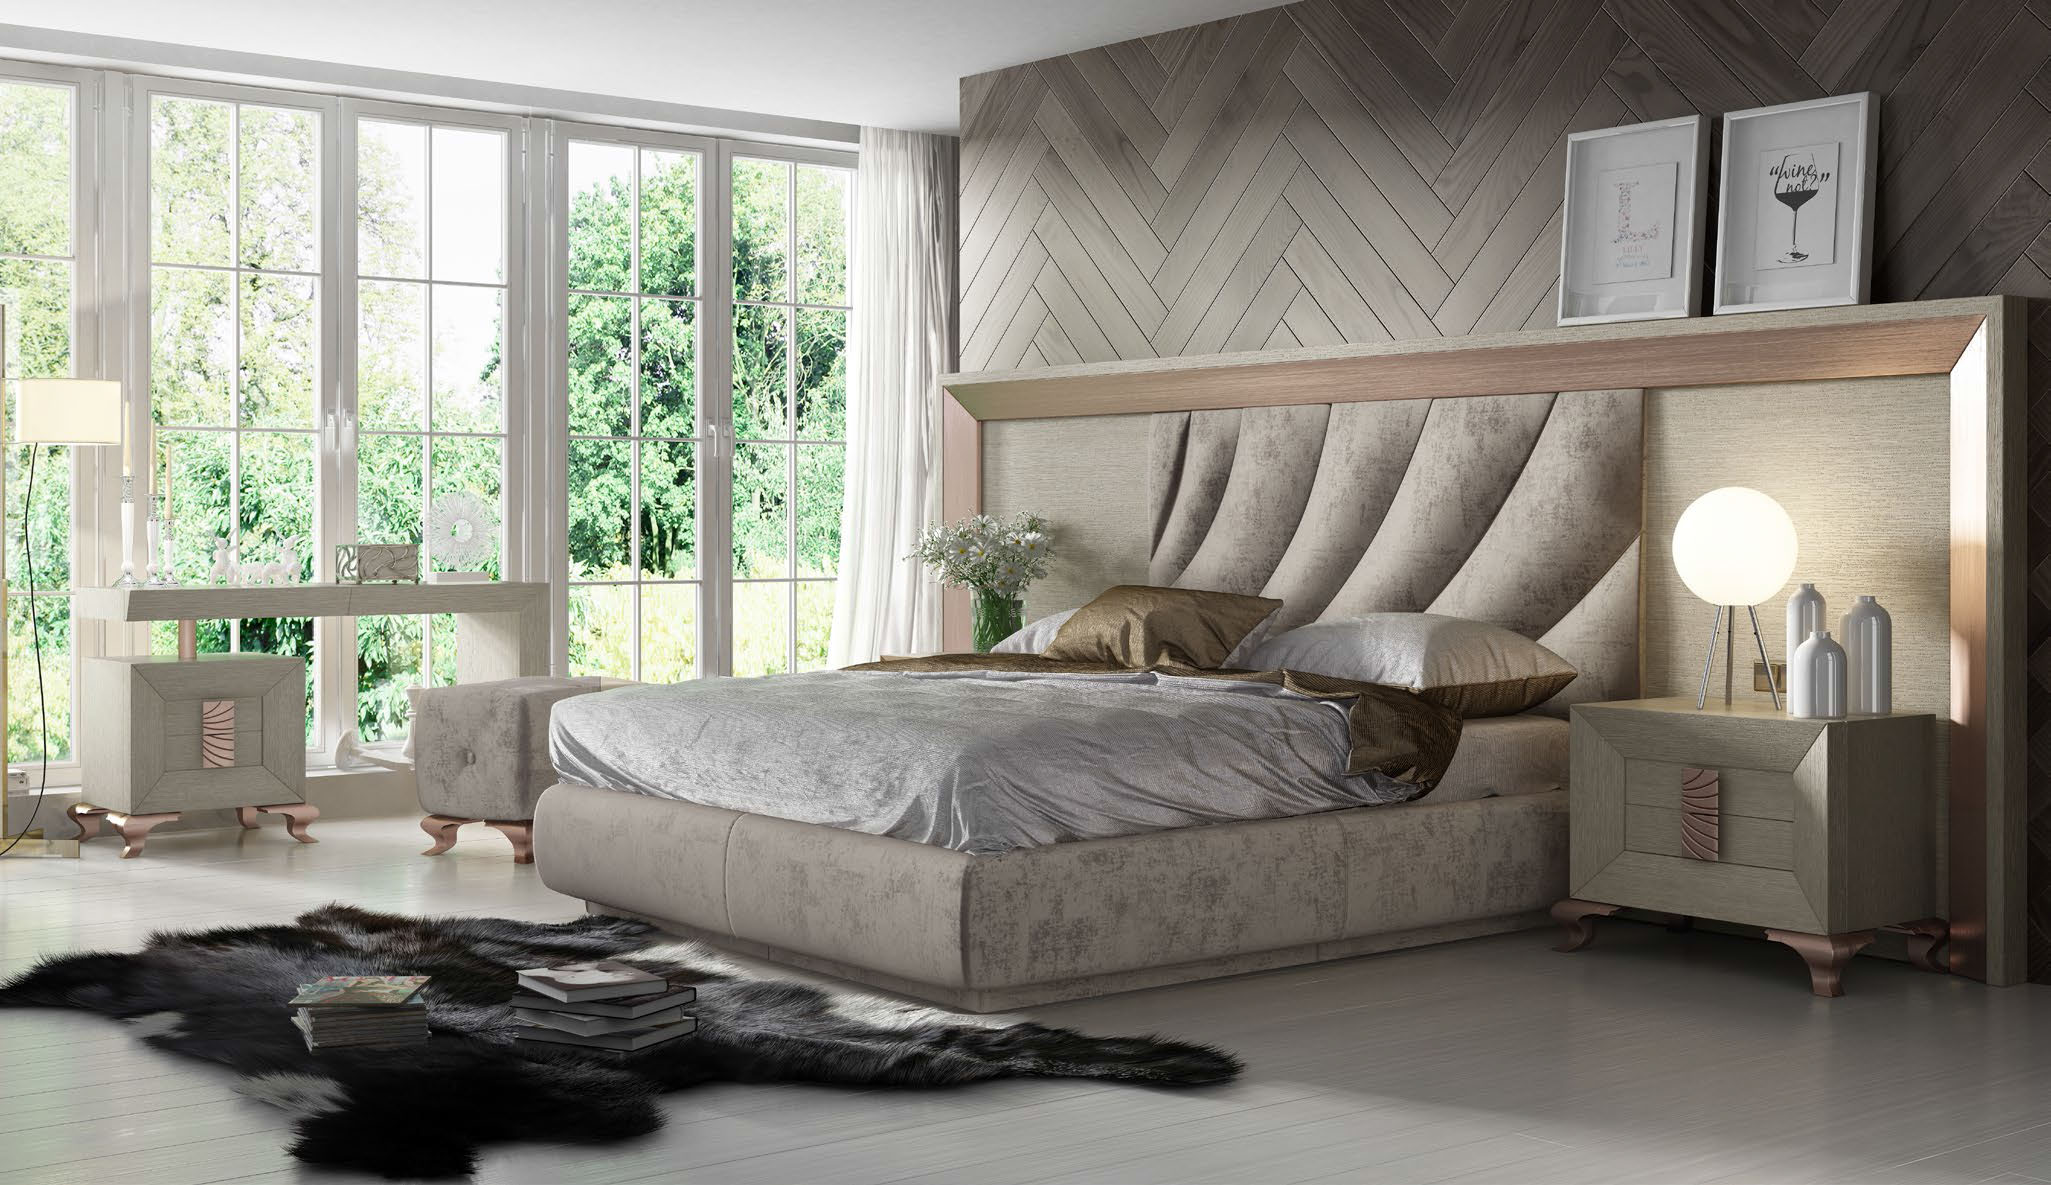 Brands Franco Furniture Avanty Bedrooms, Spain DOR 126